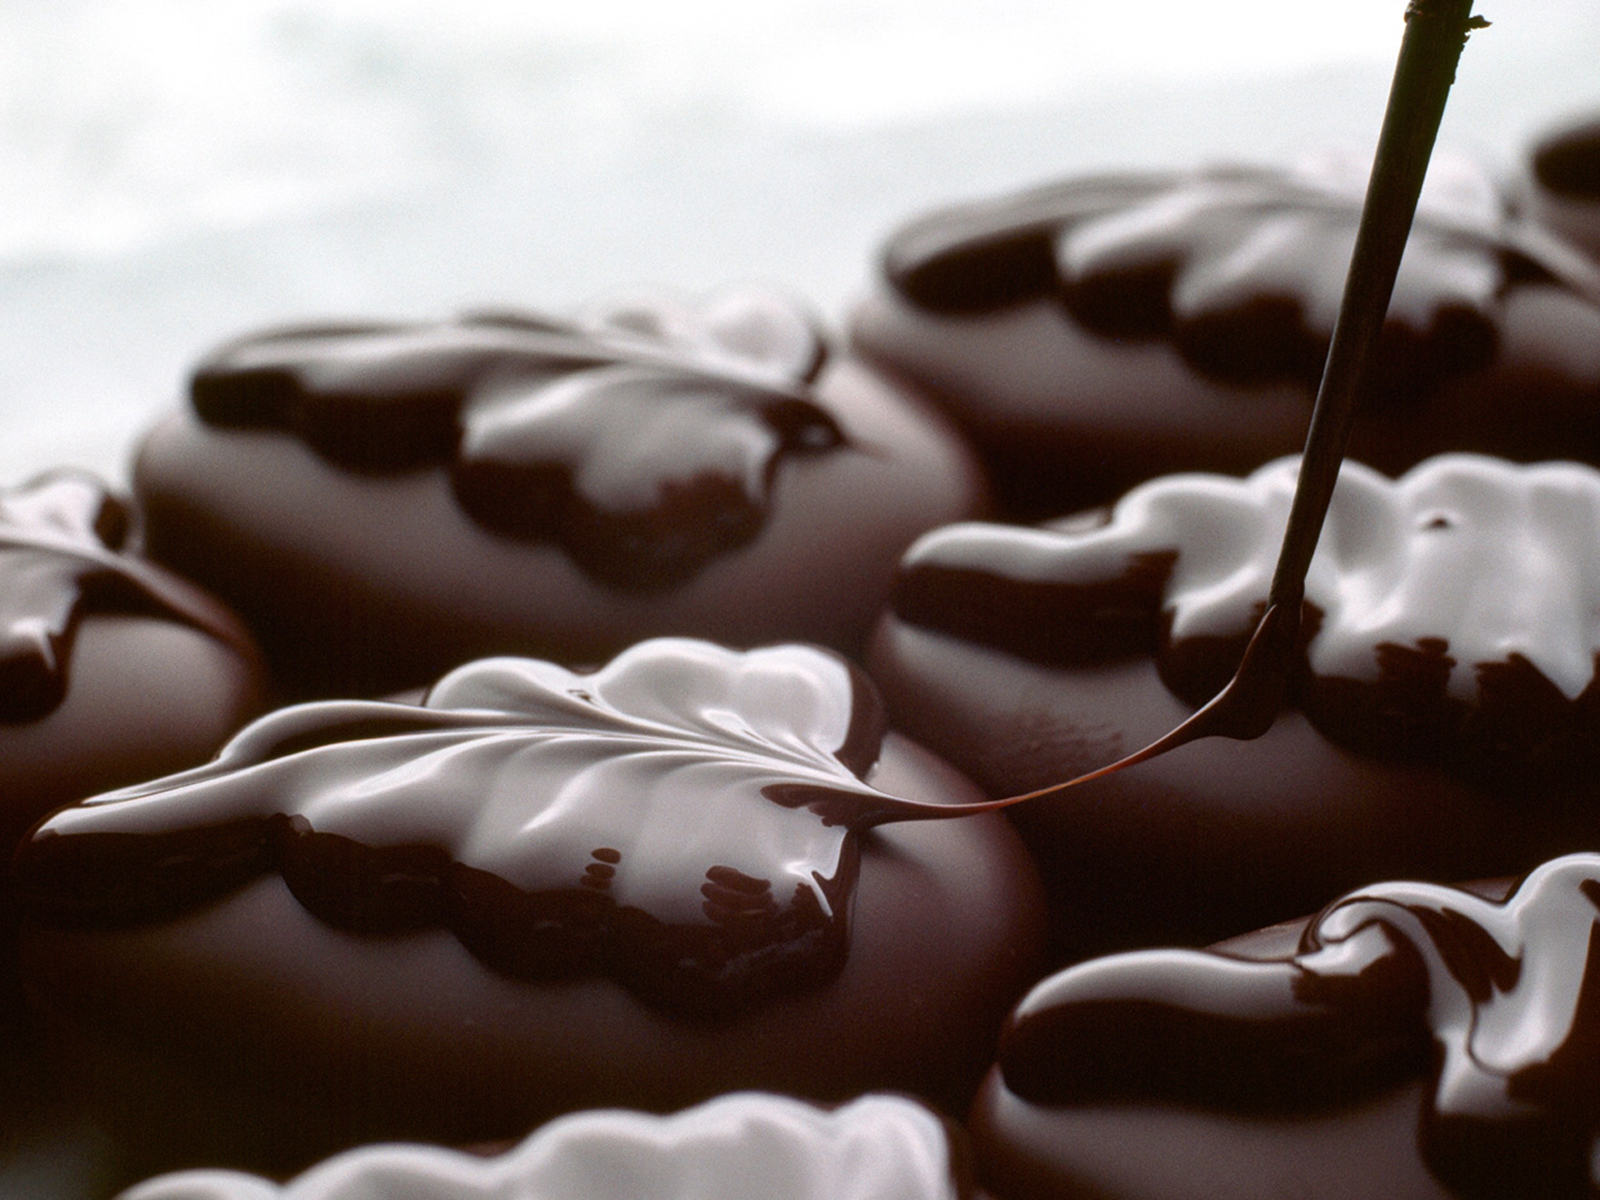 Chocolate Candy Sweet Wallpaper Bộ Sưu Tập Thực Phẩm Ngọt Ngào Kẹo Sô Cô La  Đen Trên Nền Đen Hình ảnh Sẵn có  Tải xuống Hình ảnh Ngay bây giờ  iStock